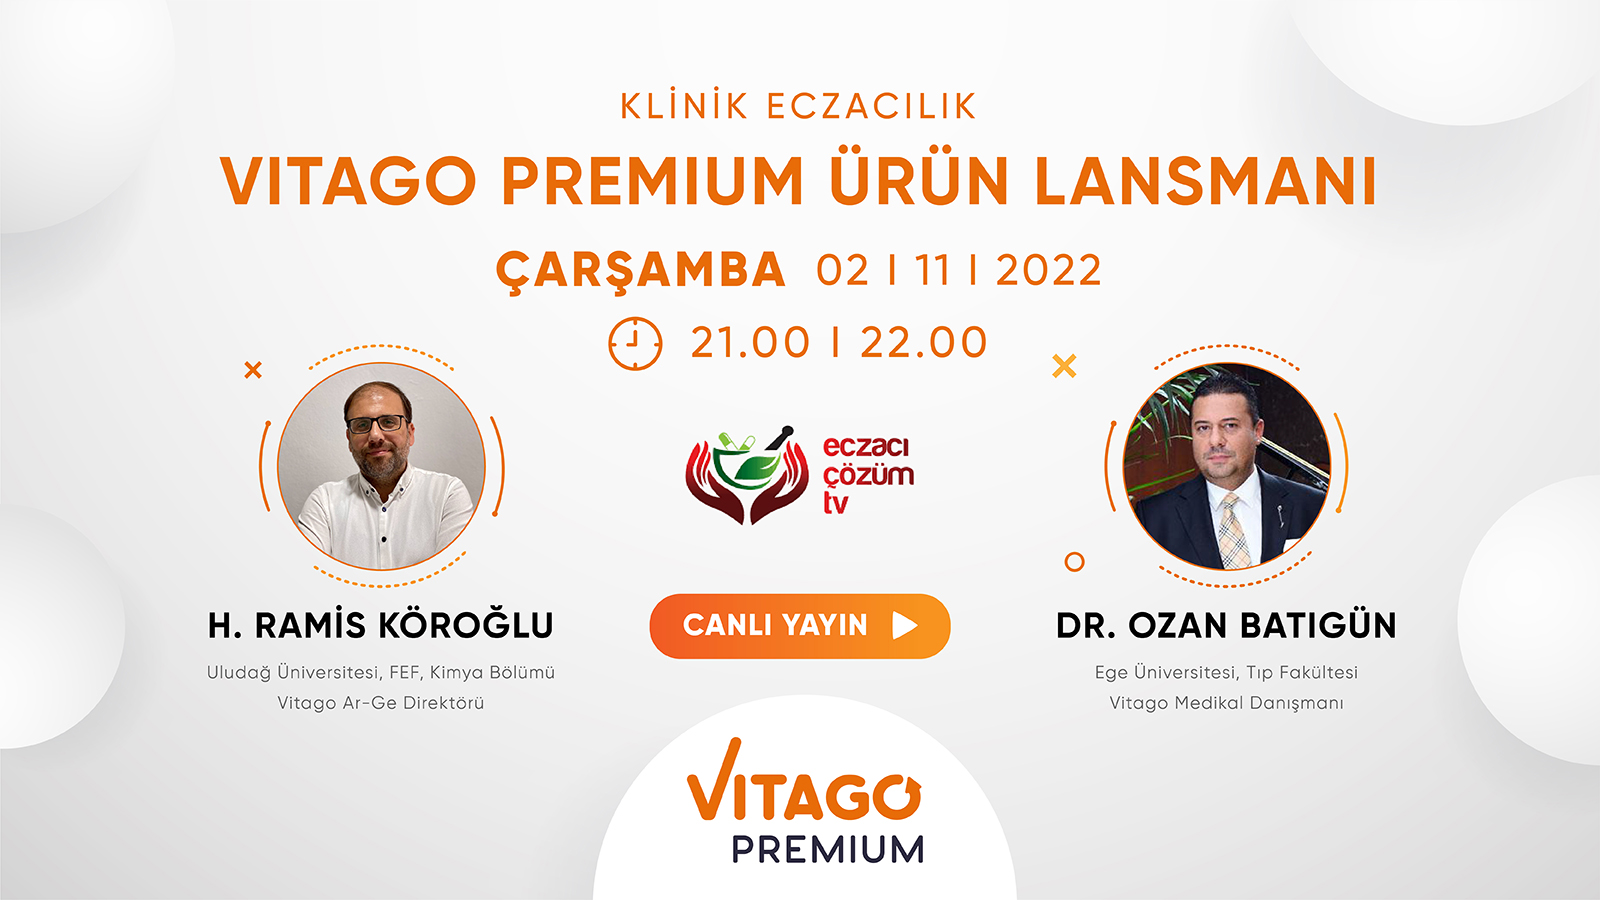 Vitago Premium Ürün Lansmanı